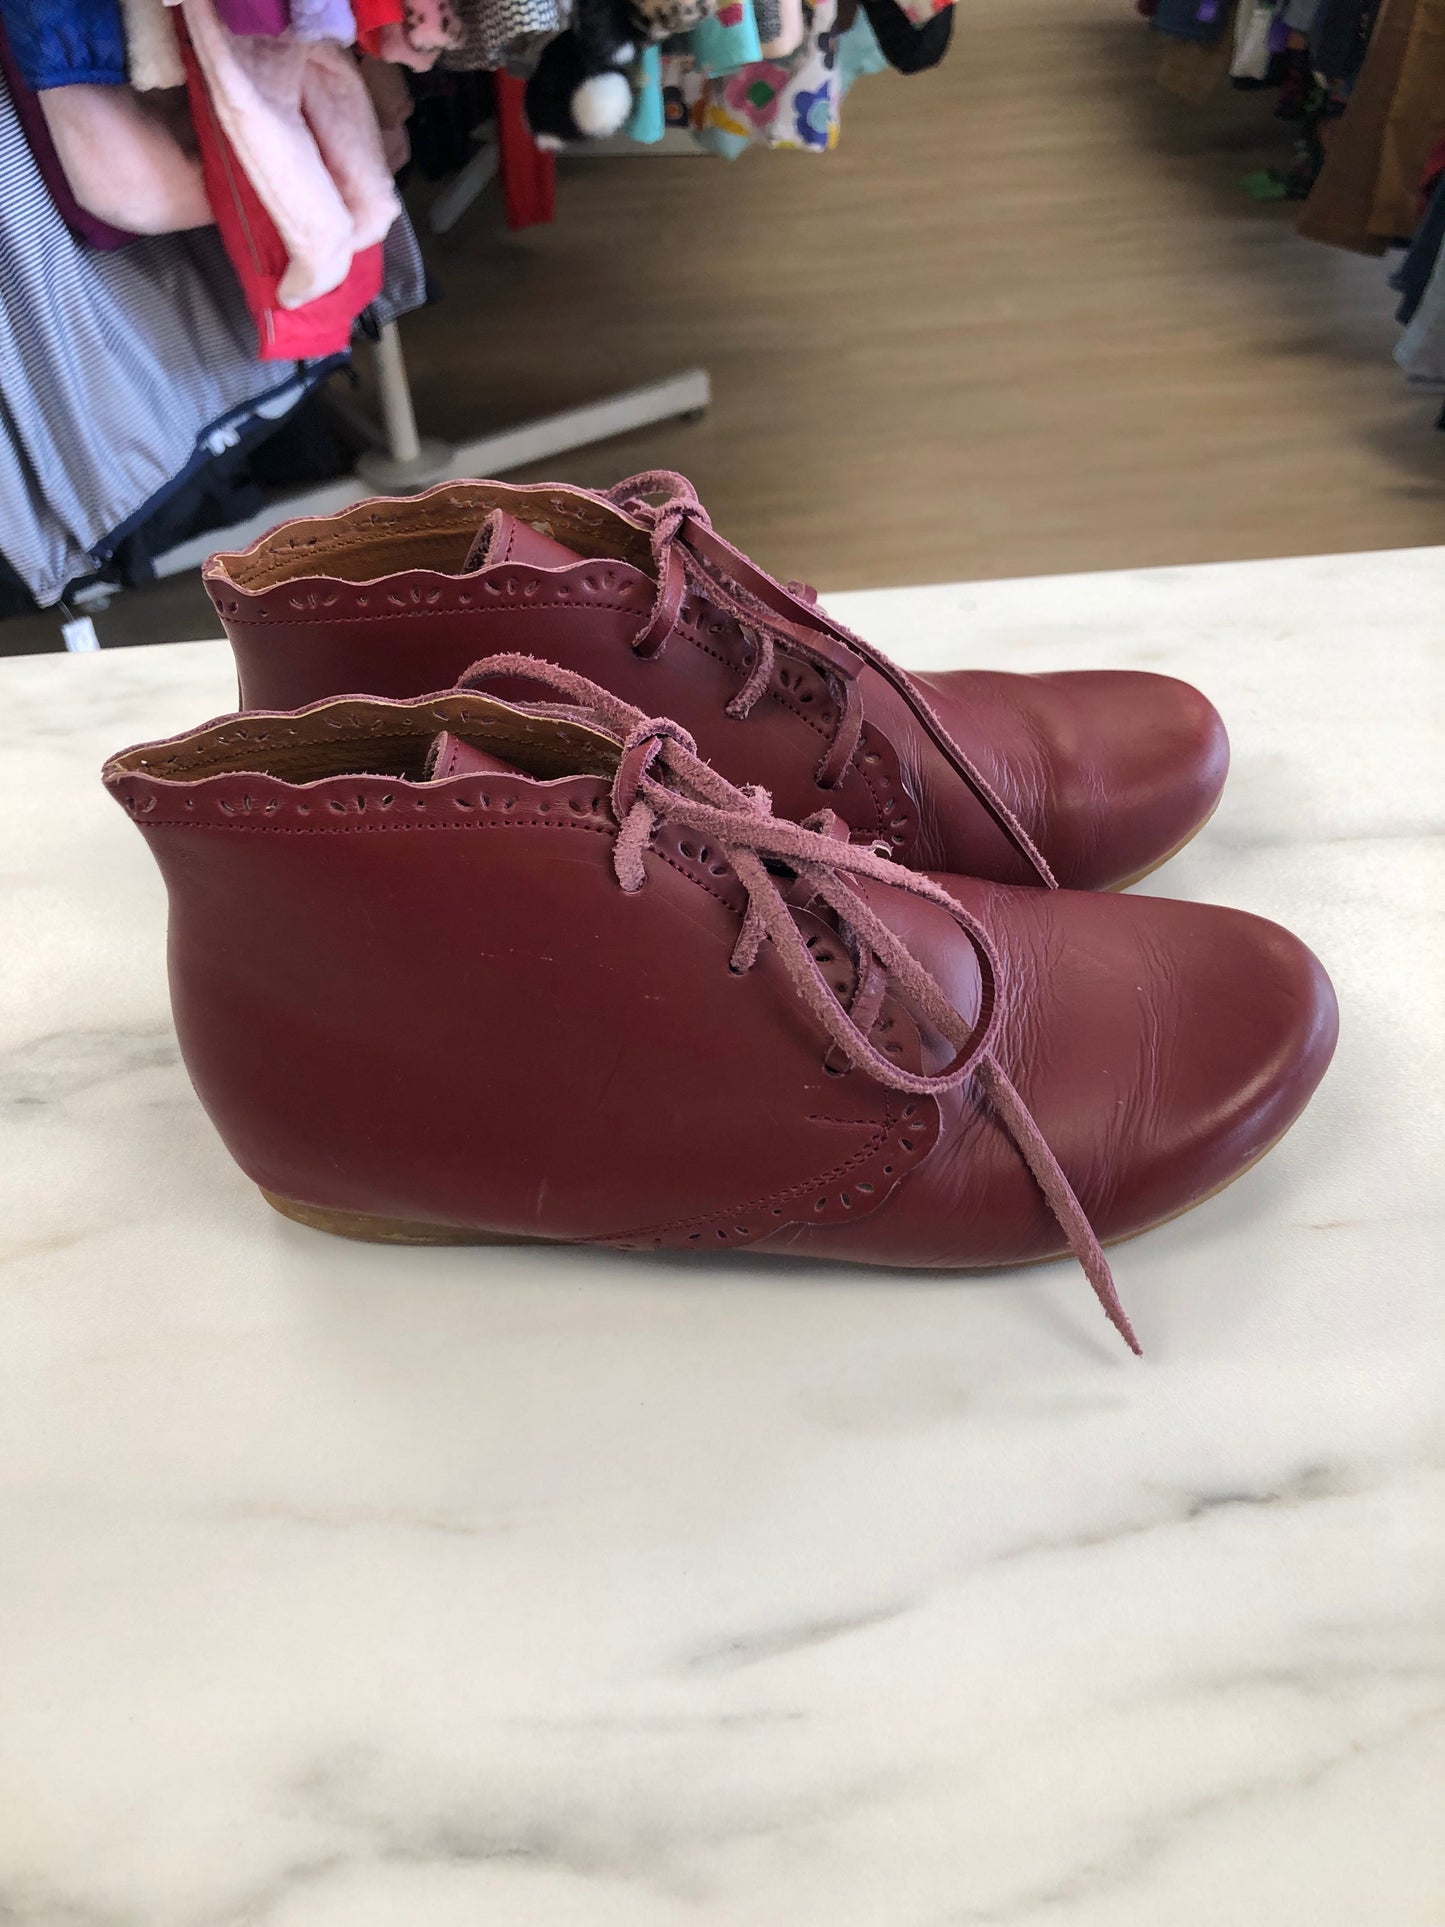 Adelisa & Co 1 Burgundy Shoes/Boots